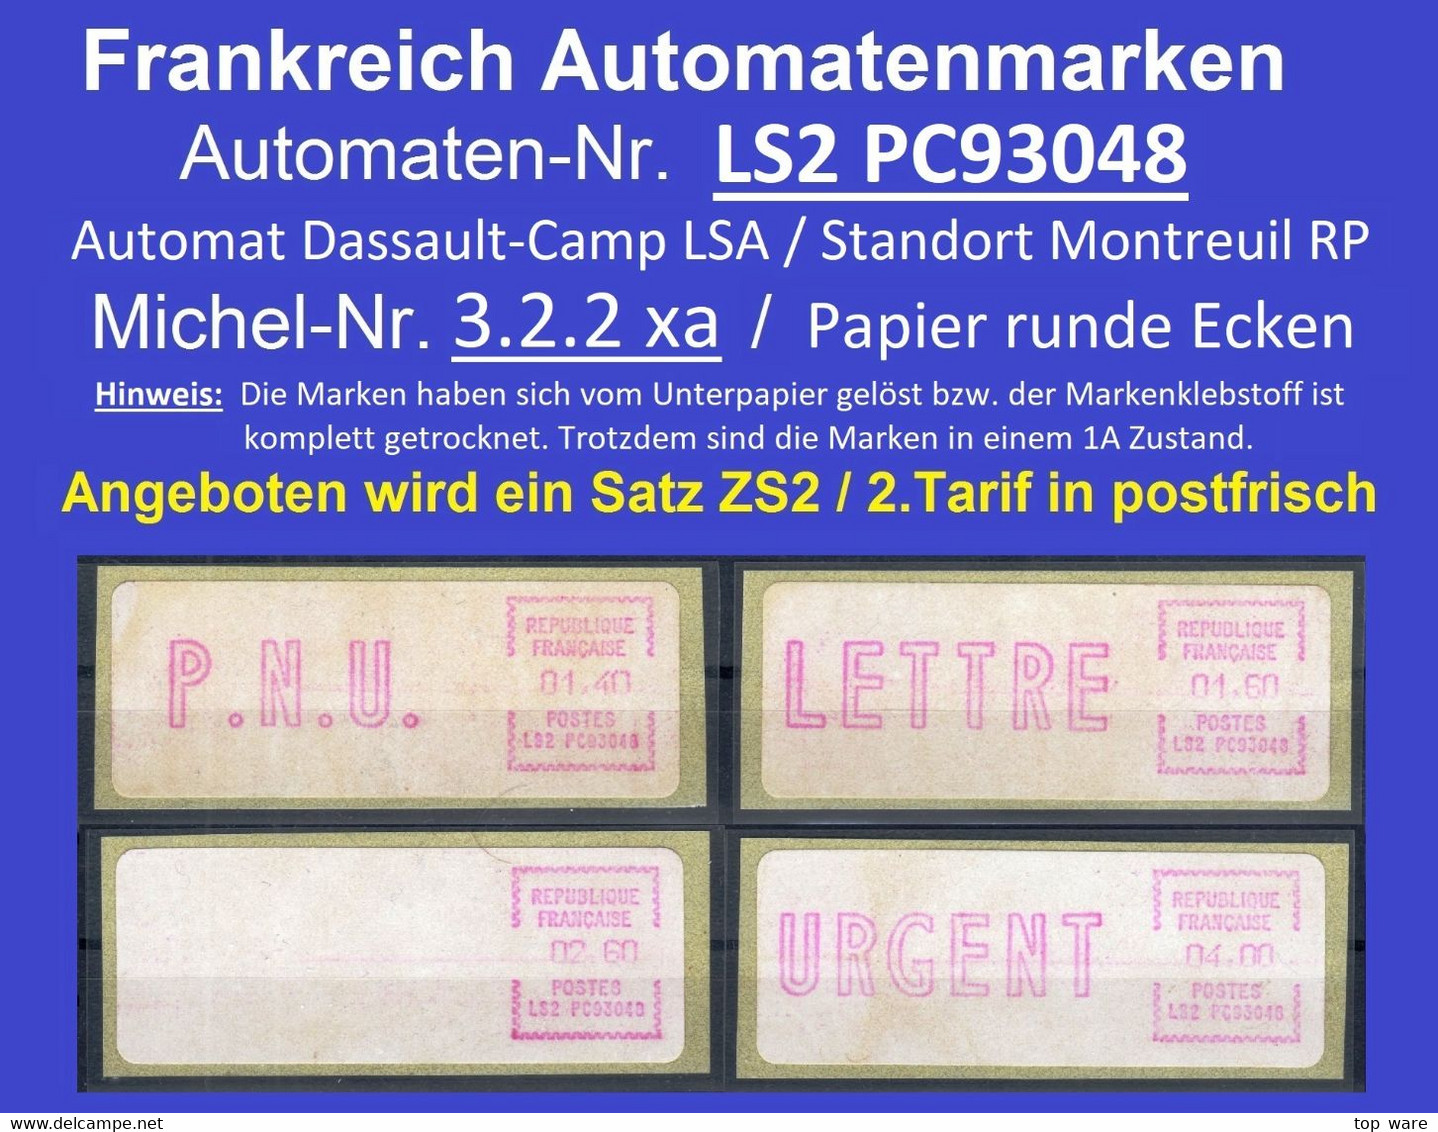 Frankreich France ATM LSA LS2 PC93048 Montreuil / Michel 3.2.2 / Satz 1.9.1981 / Distributeurs Automatenmarken Etiquetas - 1981-84 Types « LS » & « LSA » (prototypes)